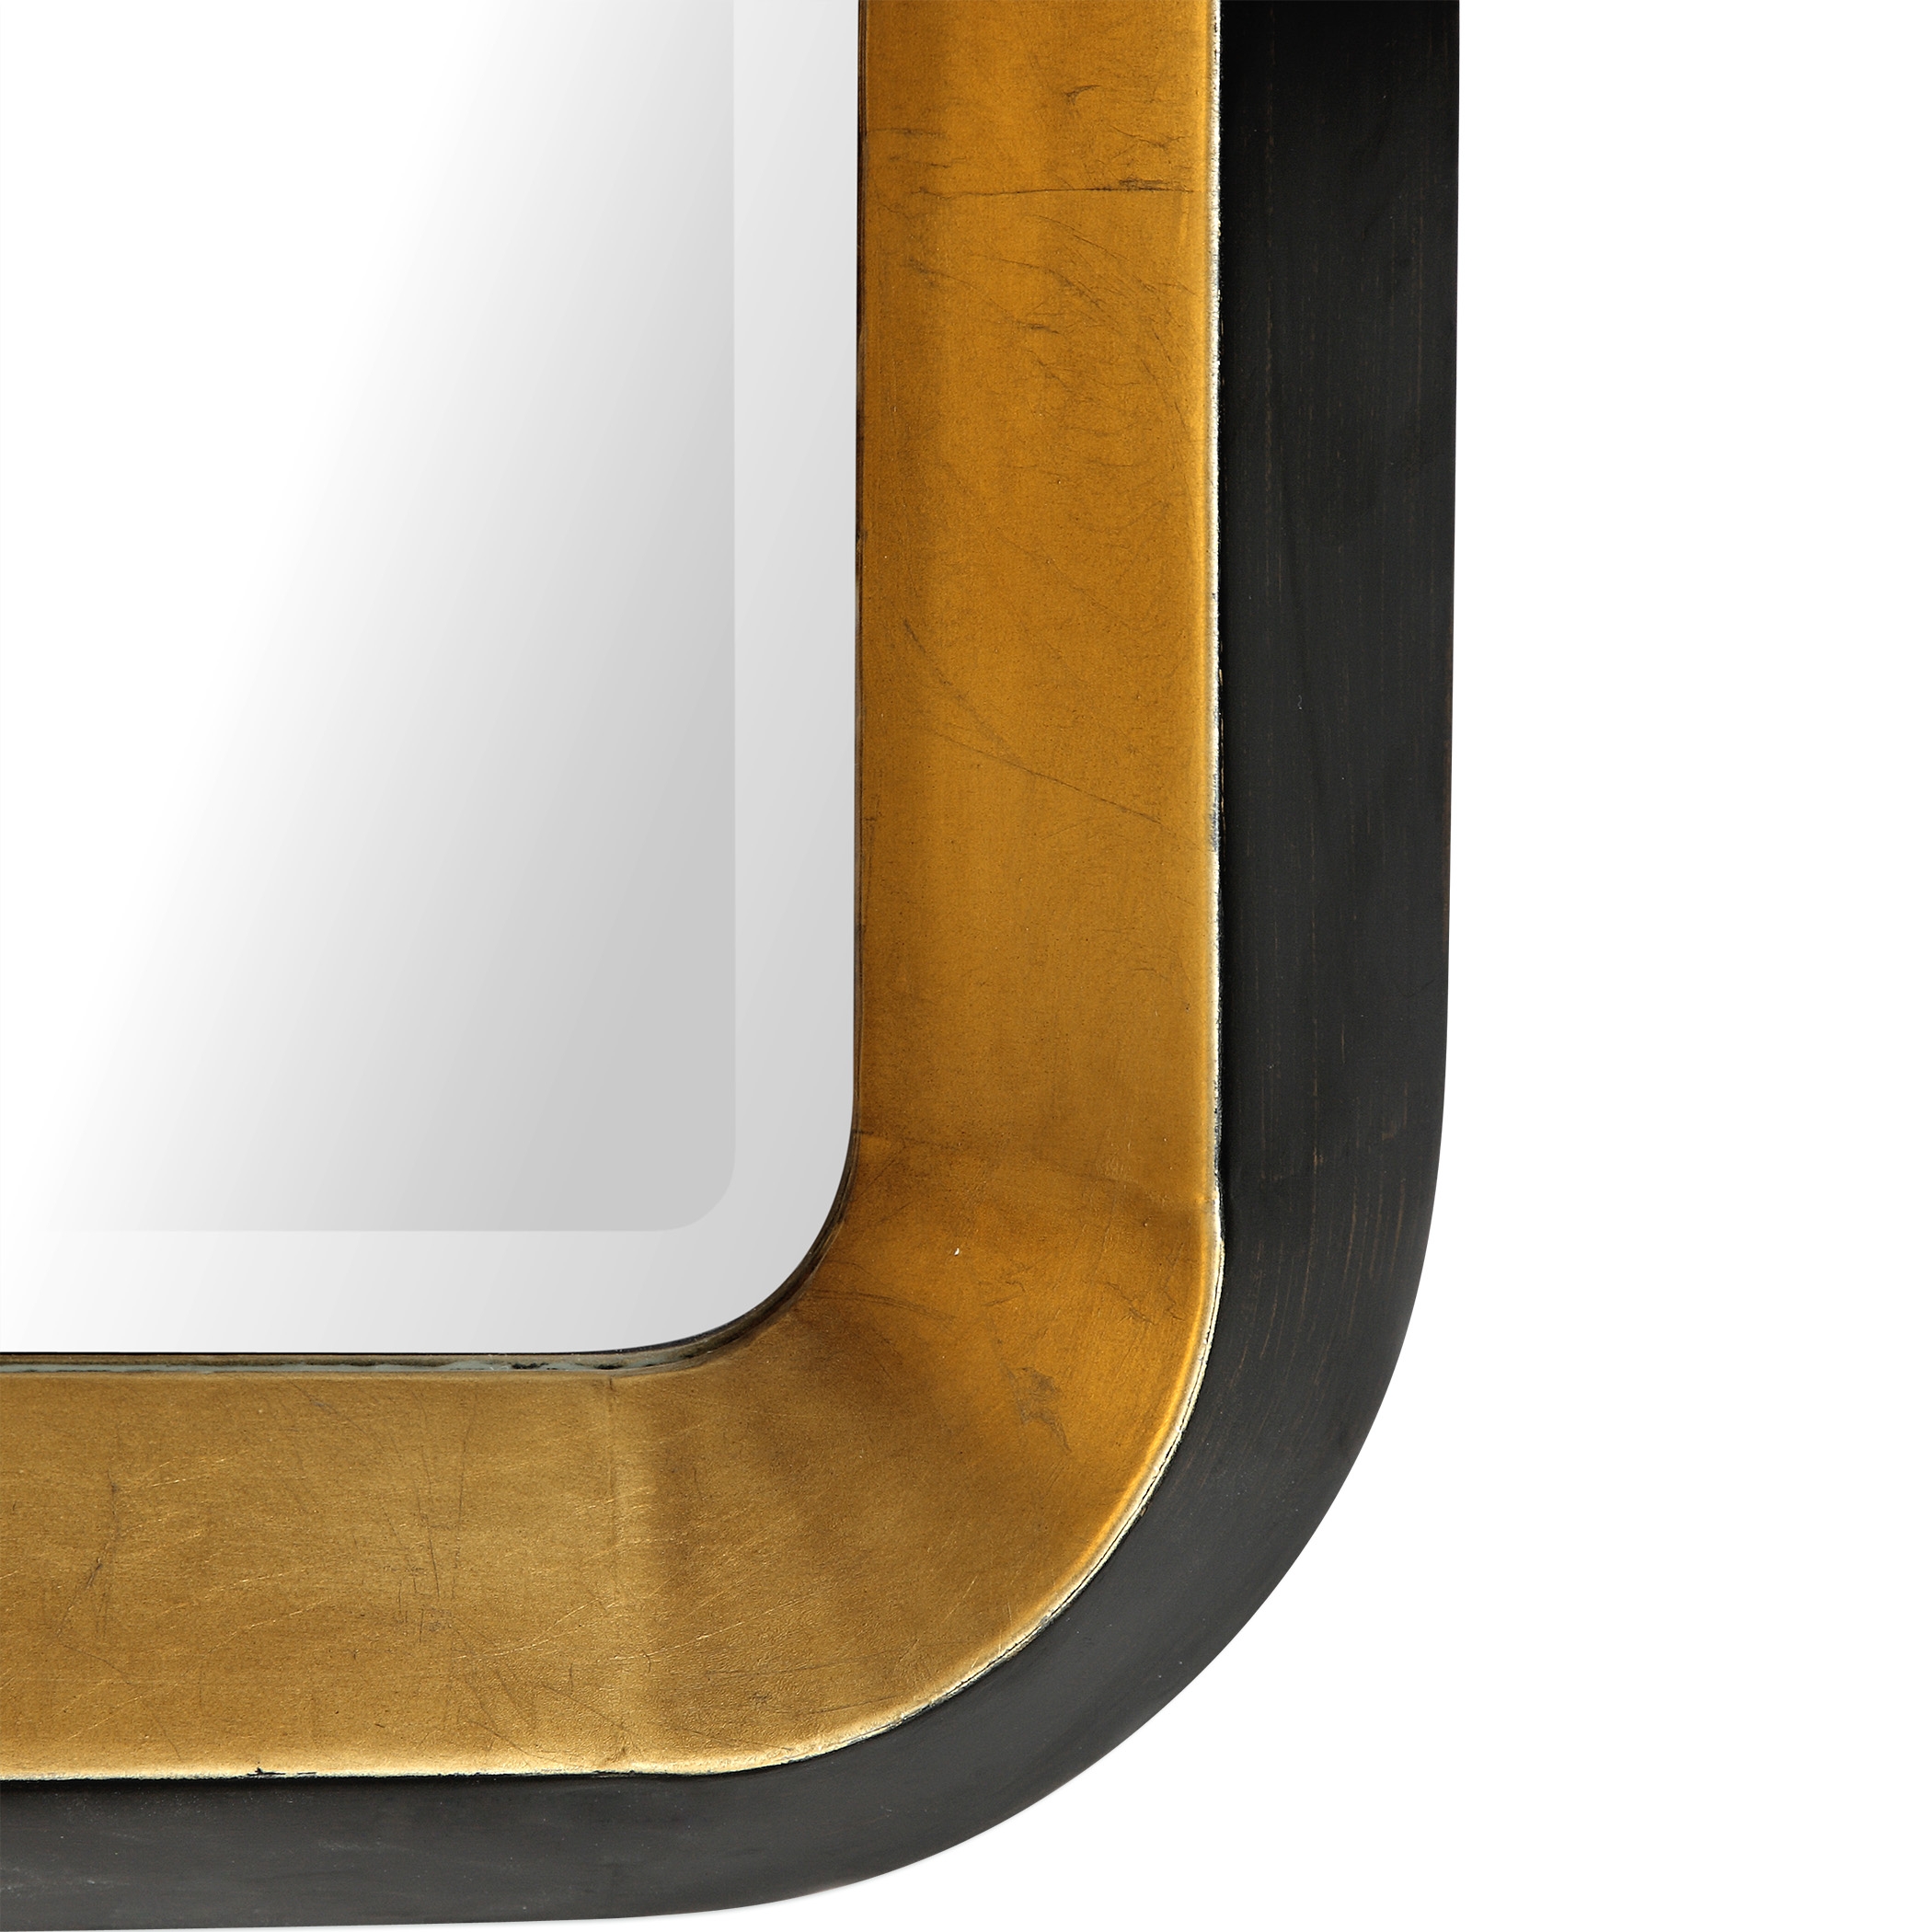 Niva Metallic Gold Wall Mirror - Image 1